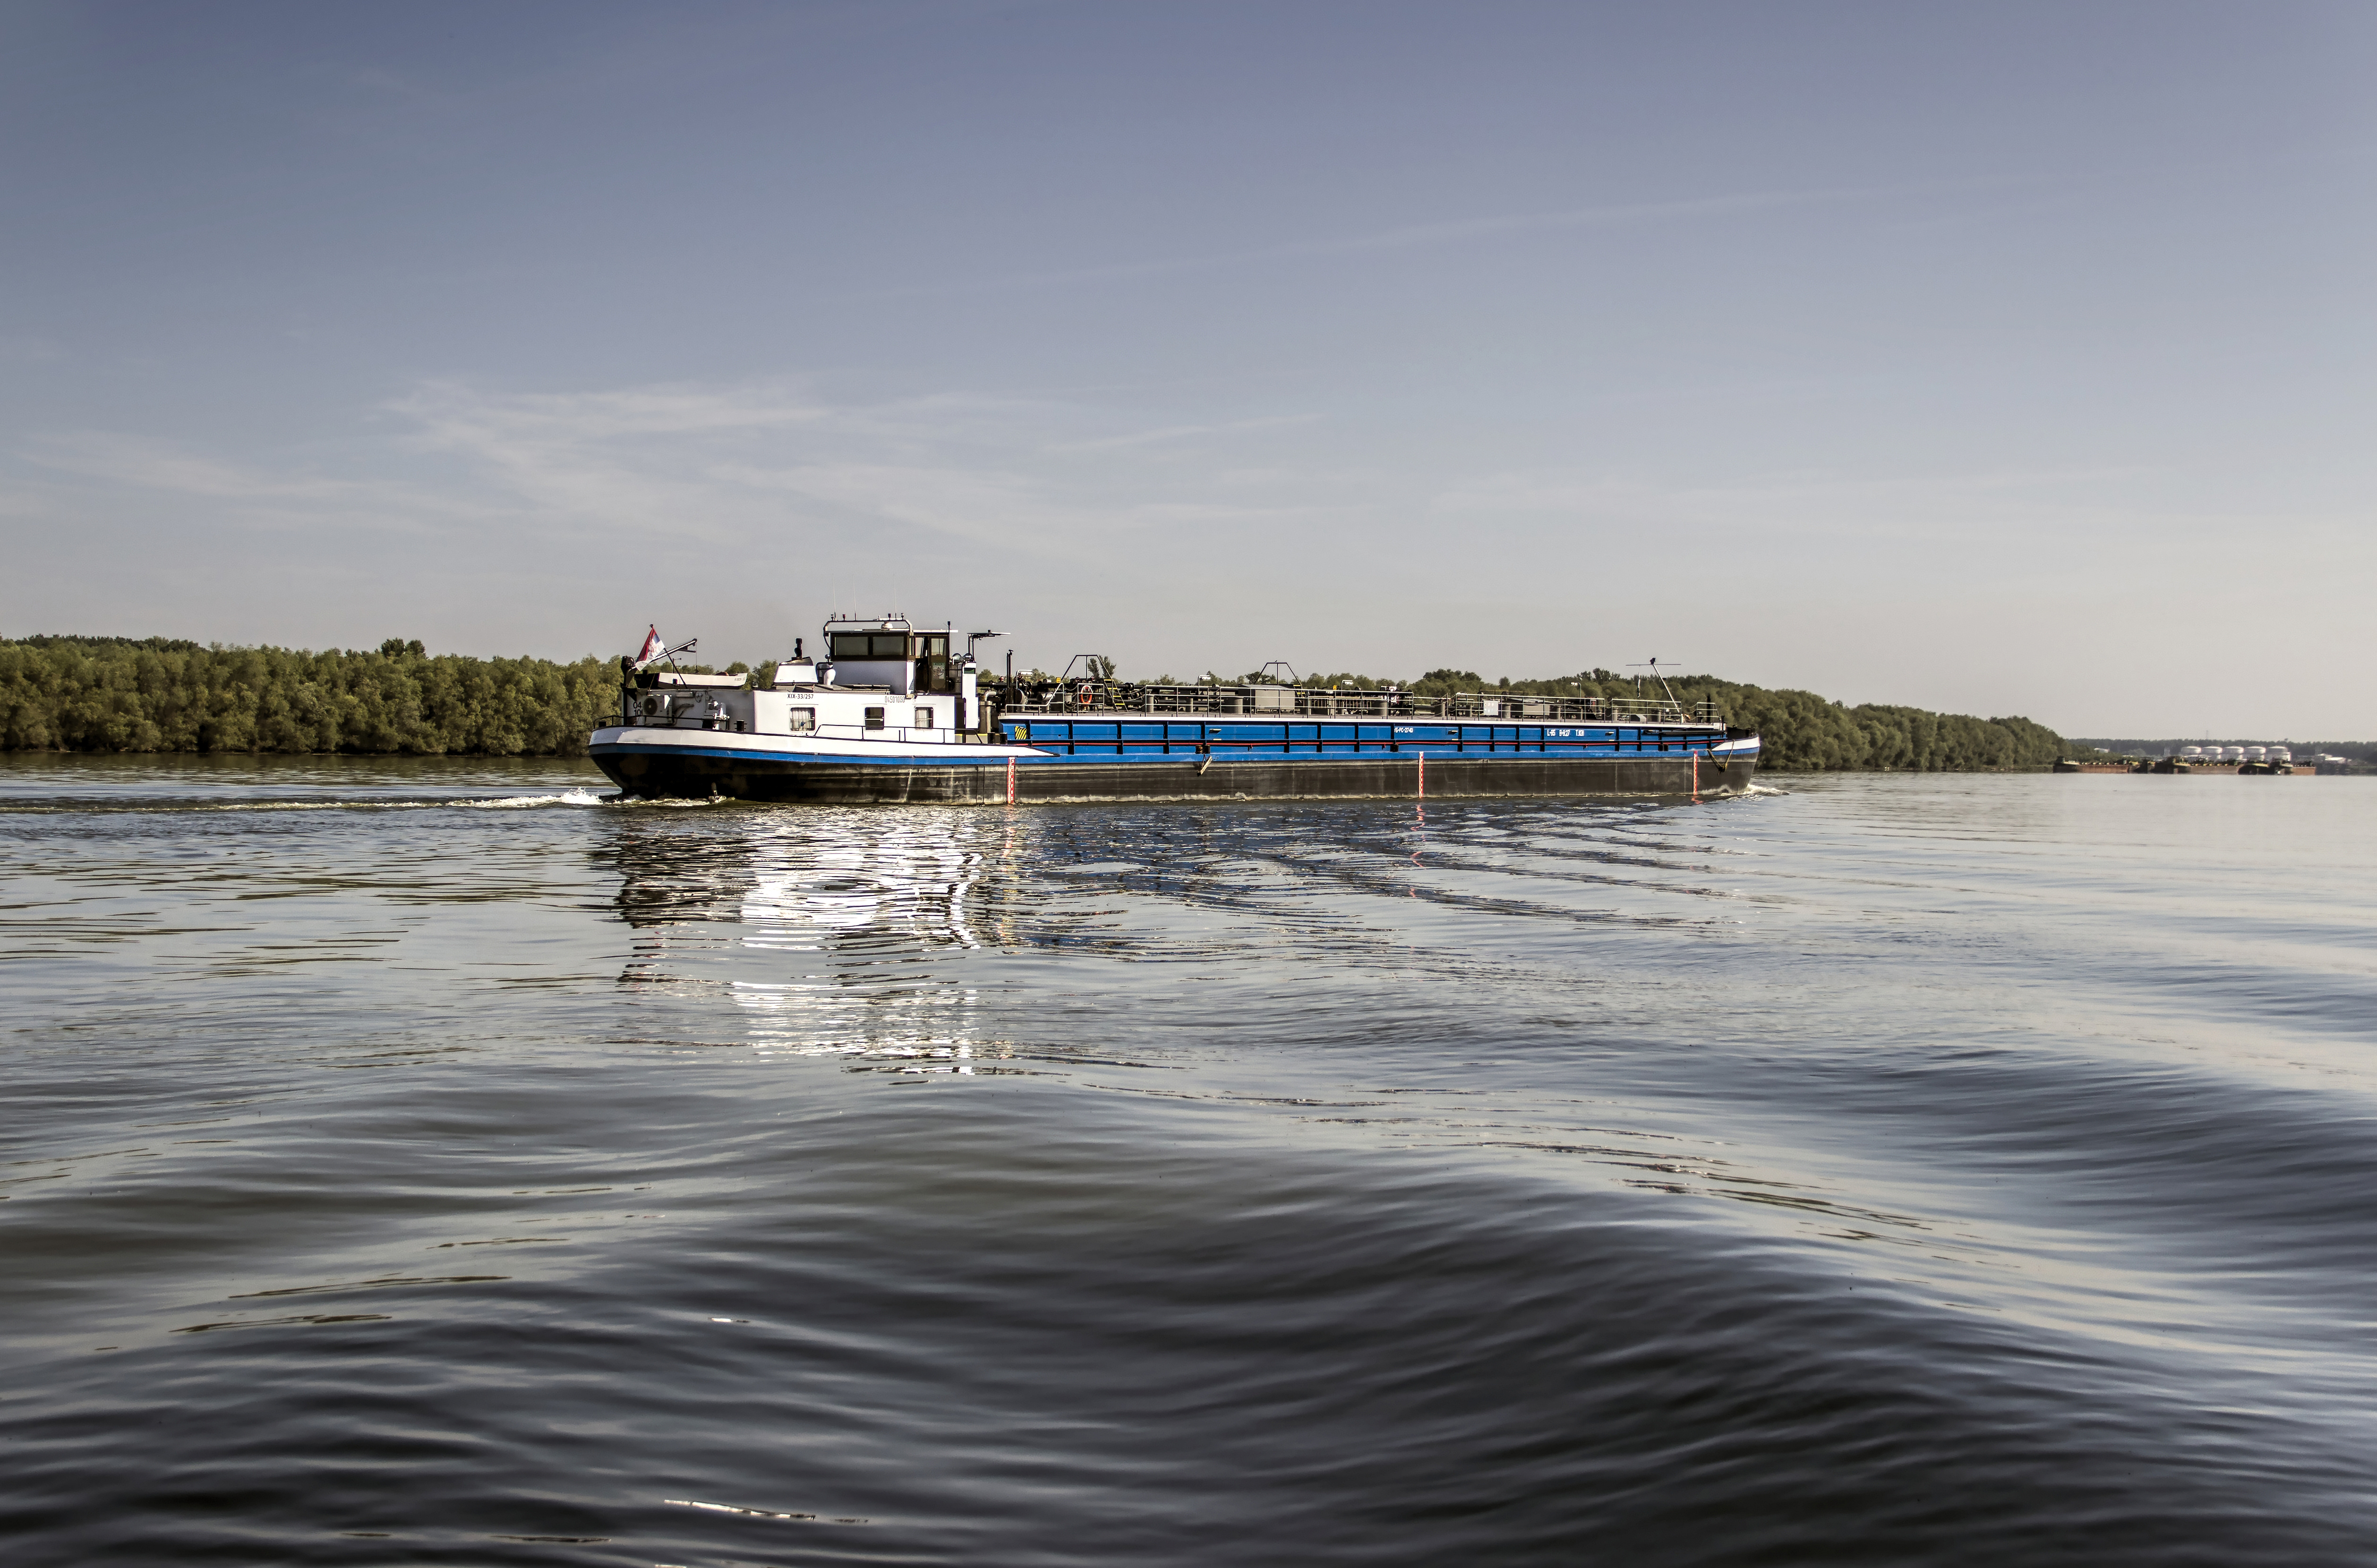 Donau international nur punktuell von stärkeren Fäkalbelastungen betroffen